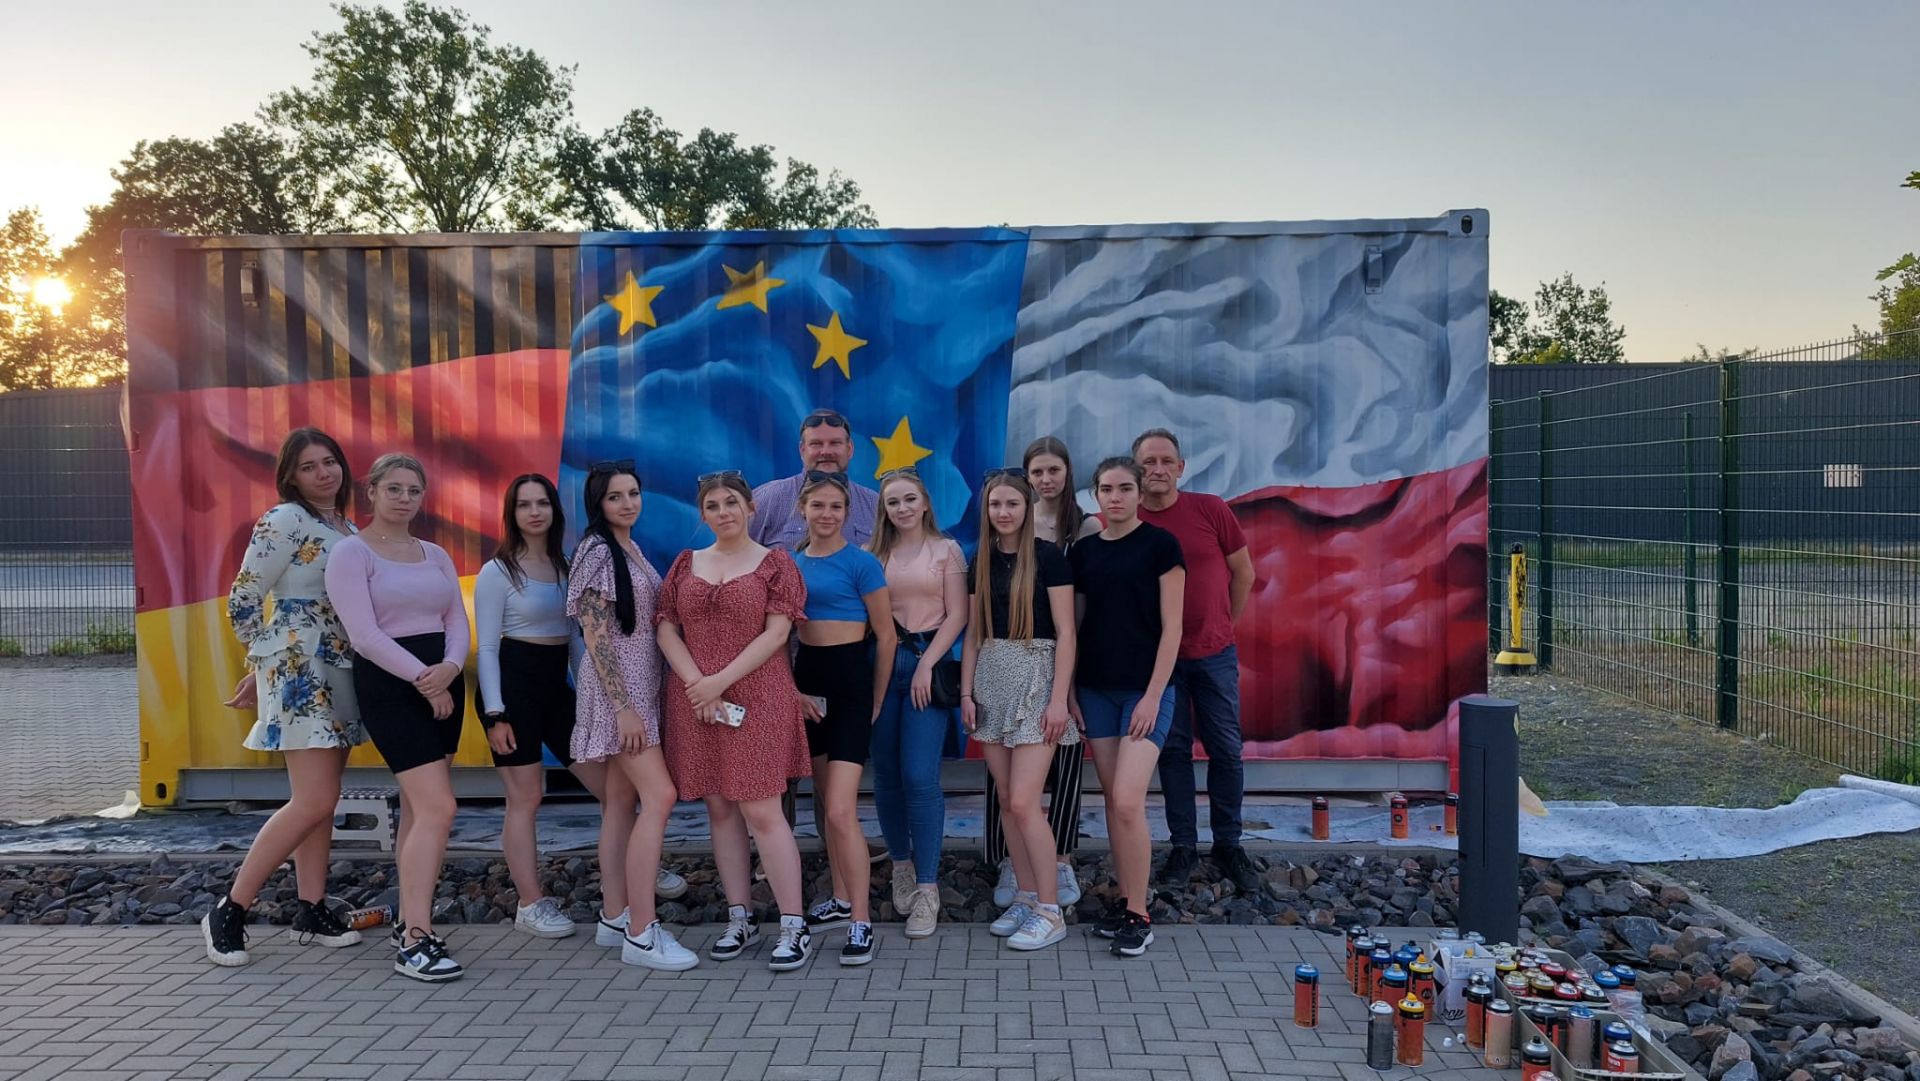 Zdjęcie grupowe młodzieży na tle graffiti w barwach narodowych Polski, Niemiec i UE